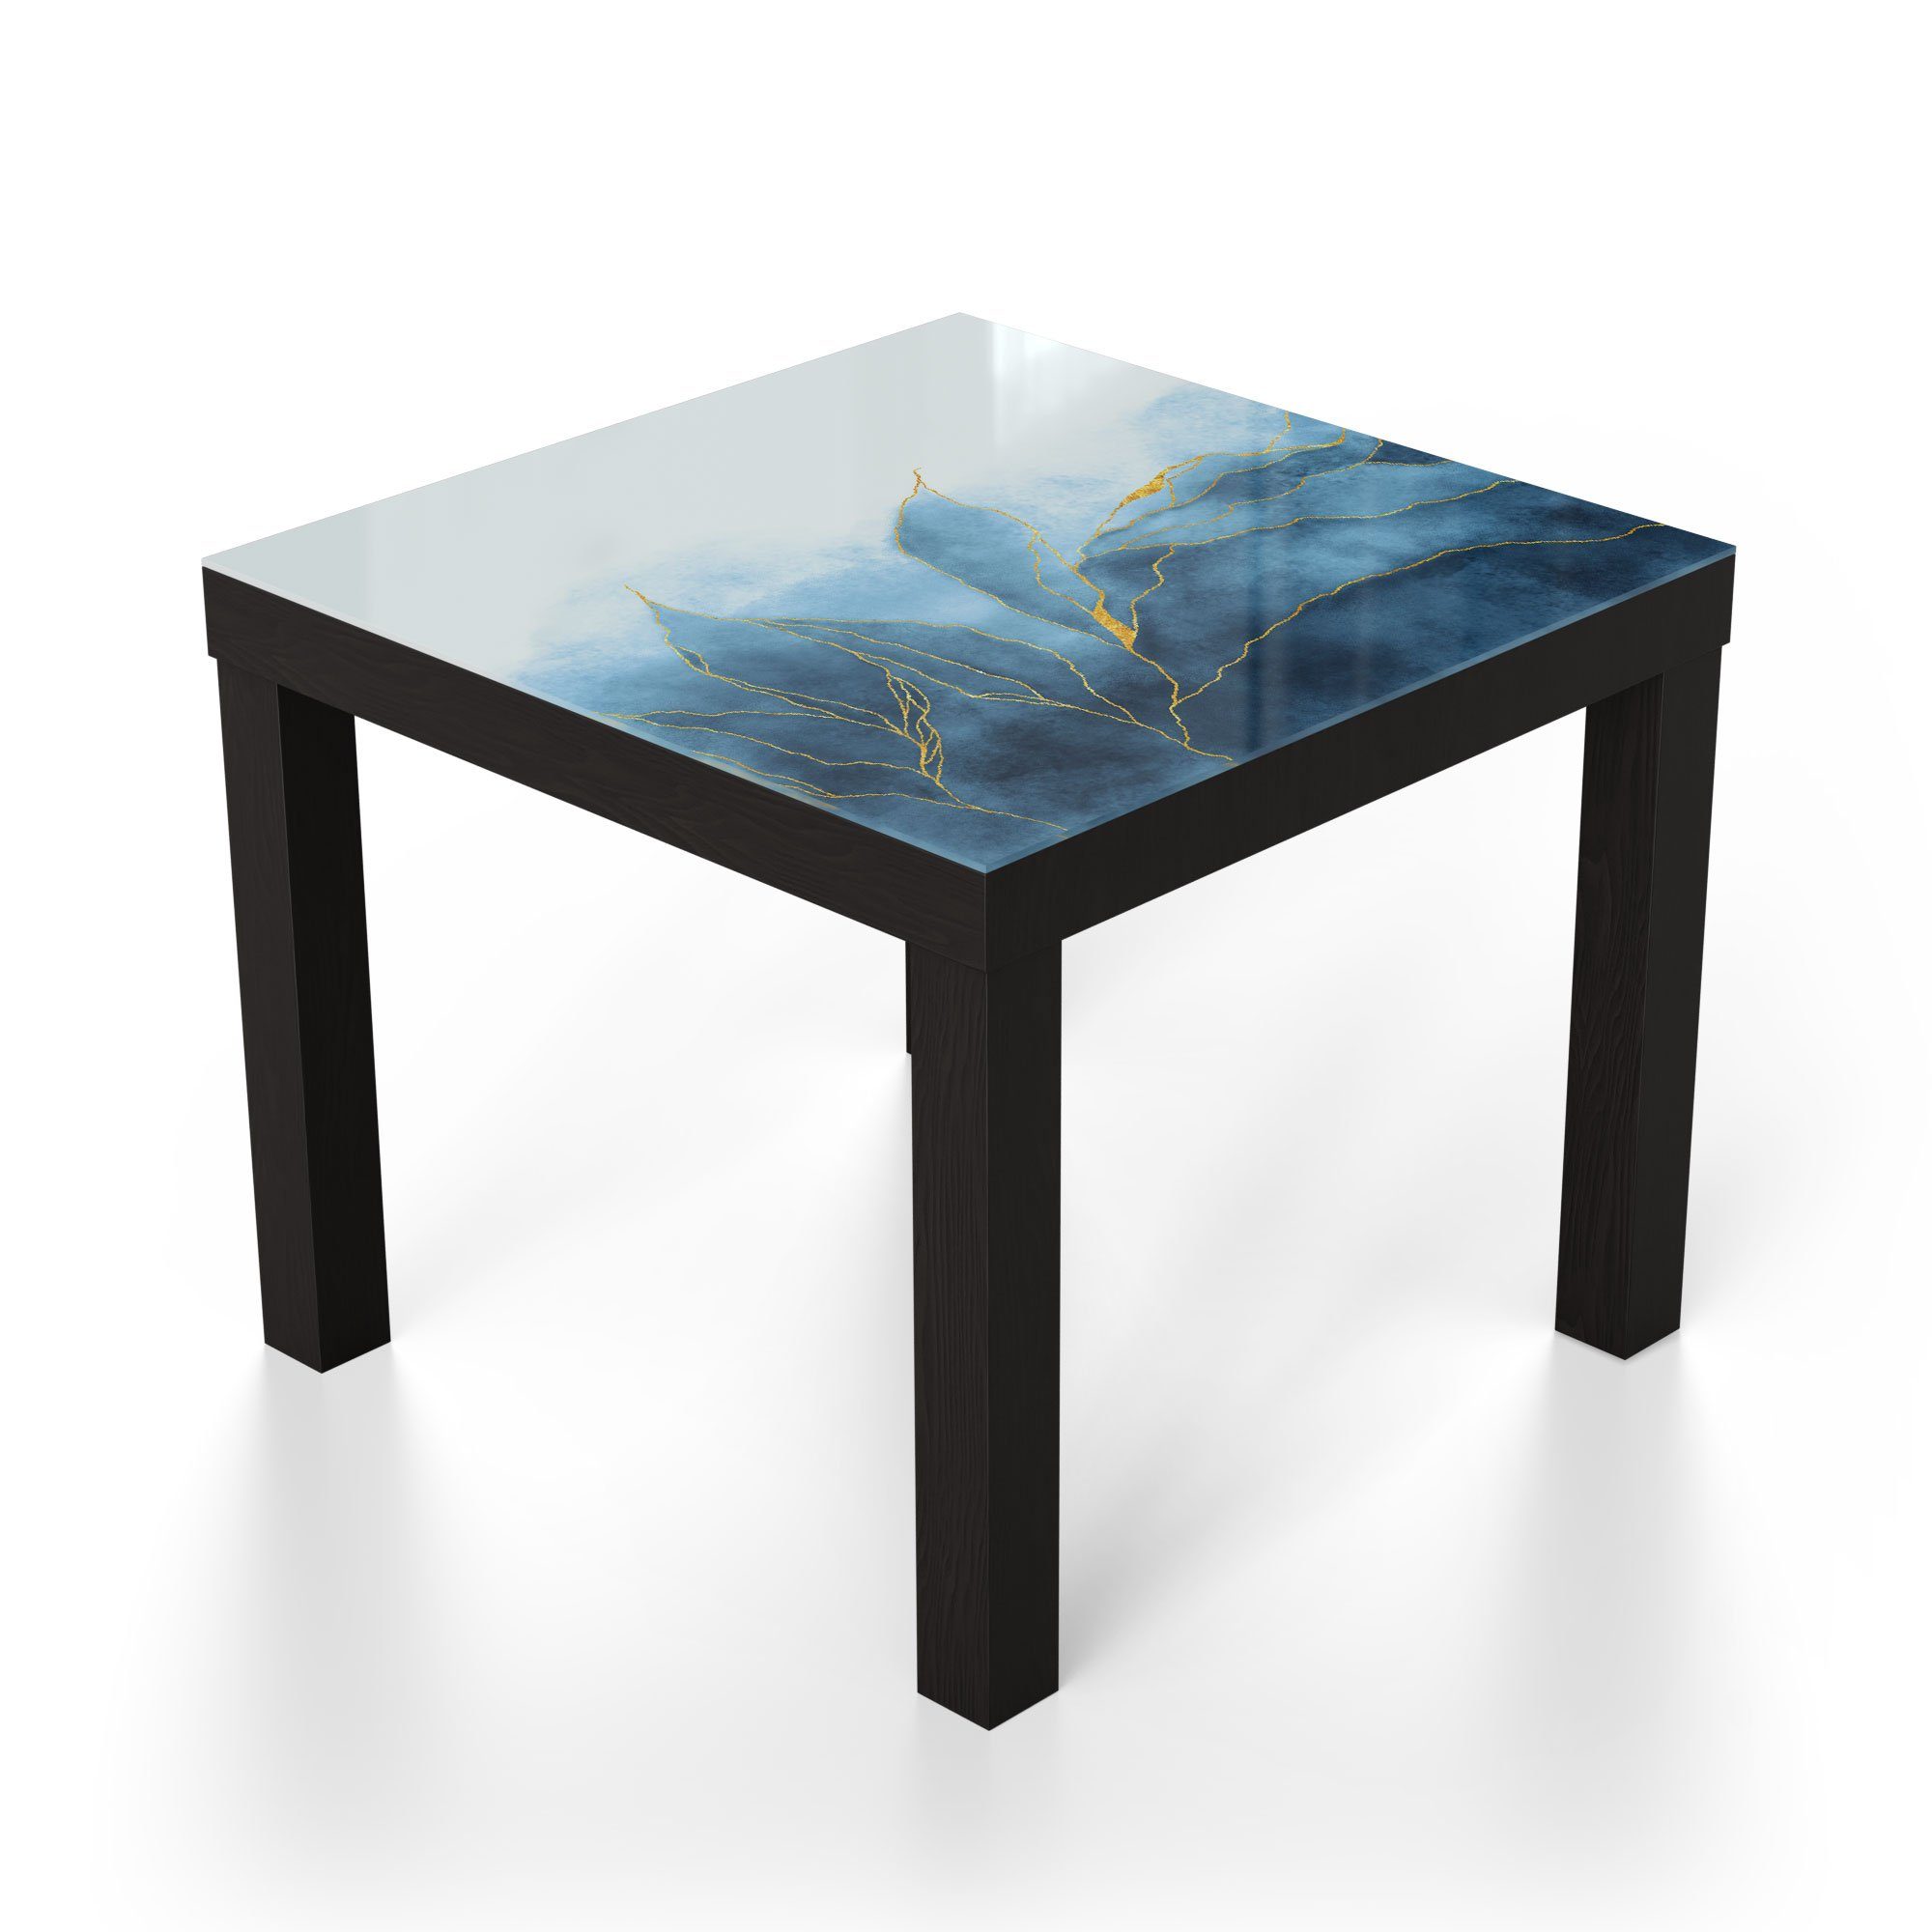 Glastisch Schwarz modern Glas Couchtisch Wasserfarbverlauf', Beistelltisch DEQORI 'Blauer